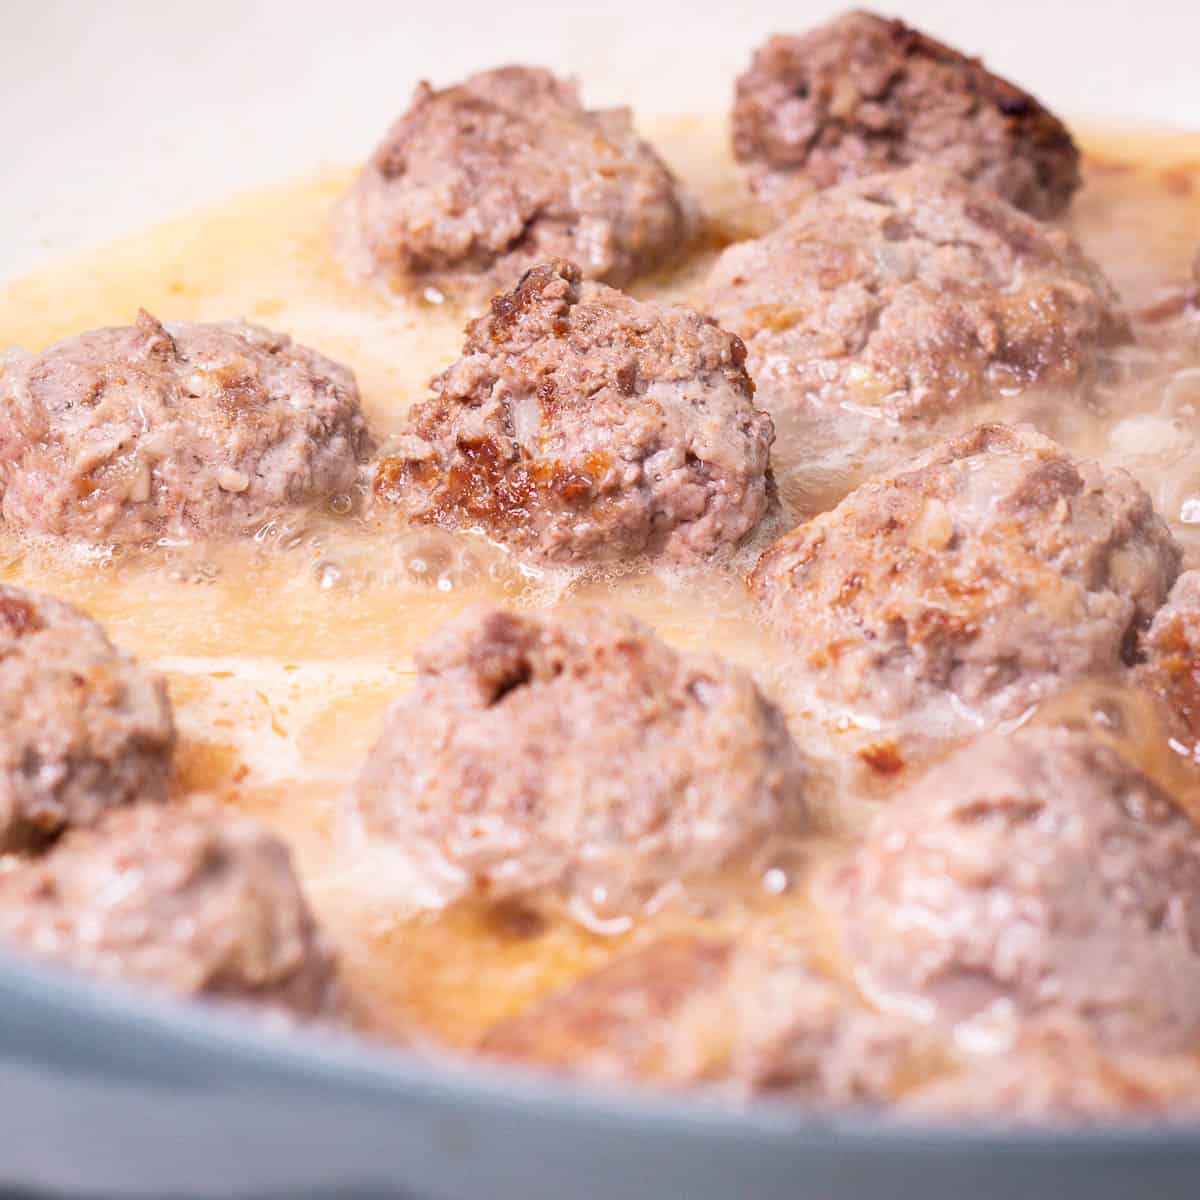 Bison Meatballs simmering in gravy.